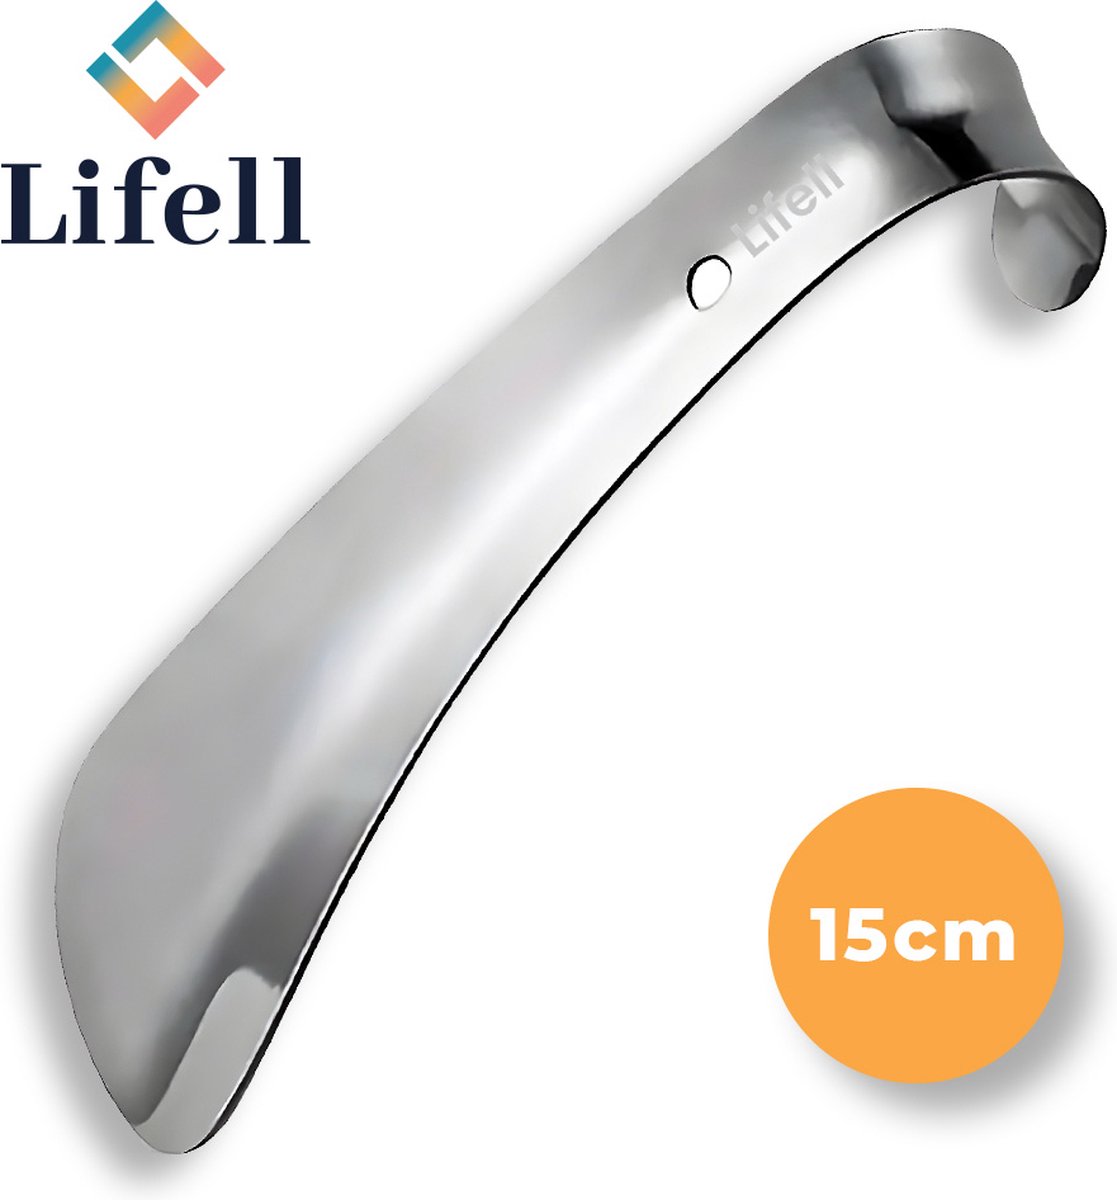 Lifell Schoenlepel - 15cm Compact - Zilvergrijs - RvS - Lifell